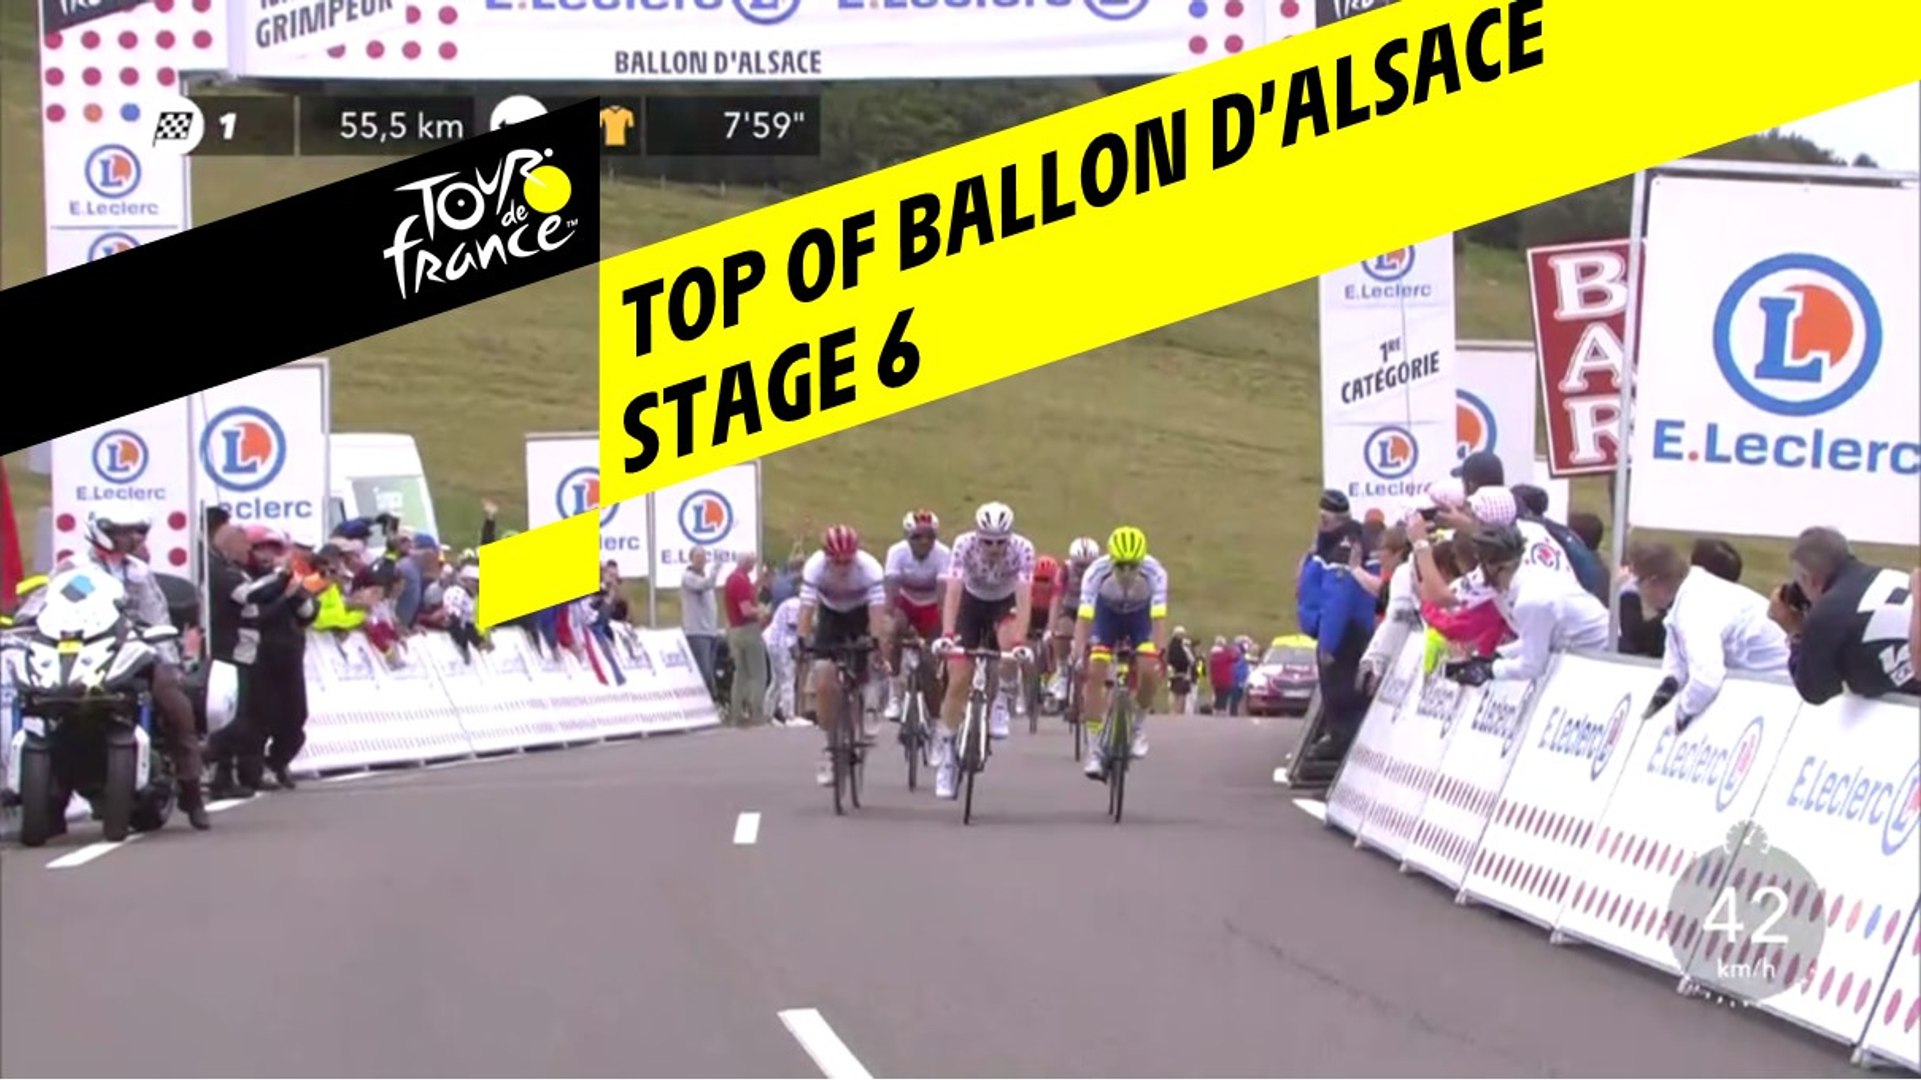 Sommet du Ballon d'Alsace / Top of Ballon d'Alsace - Étape 6 / Stage 6 -  Tour de France 2019 - Vidéo Dailymotion